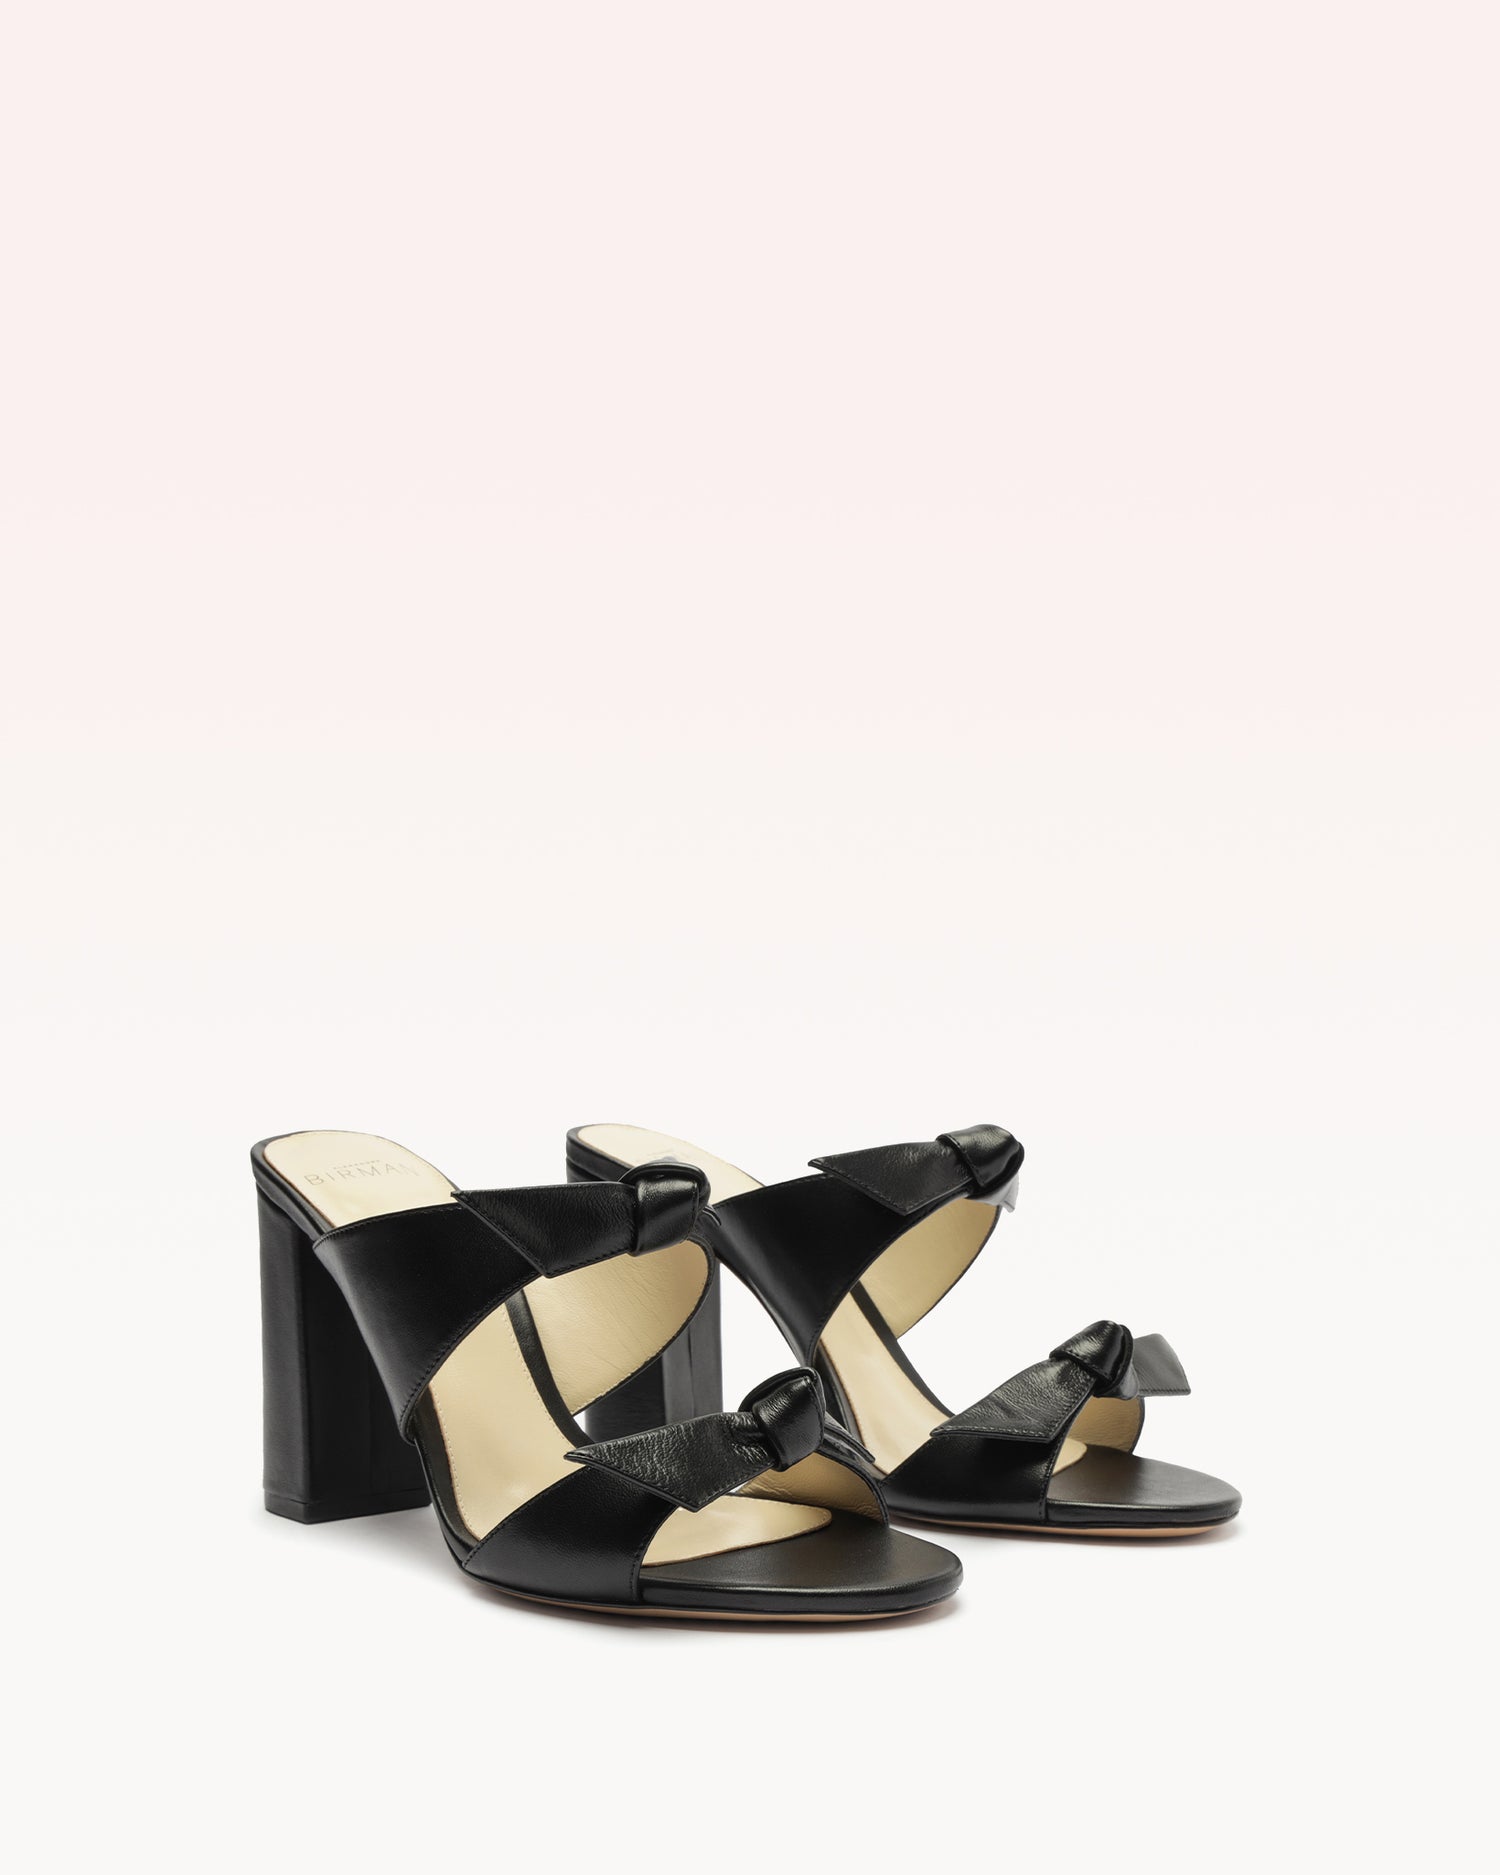 Nolita 90 Black Sandals S/24   